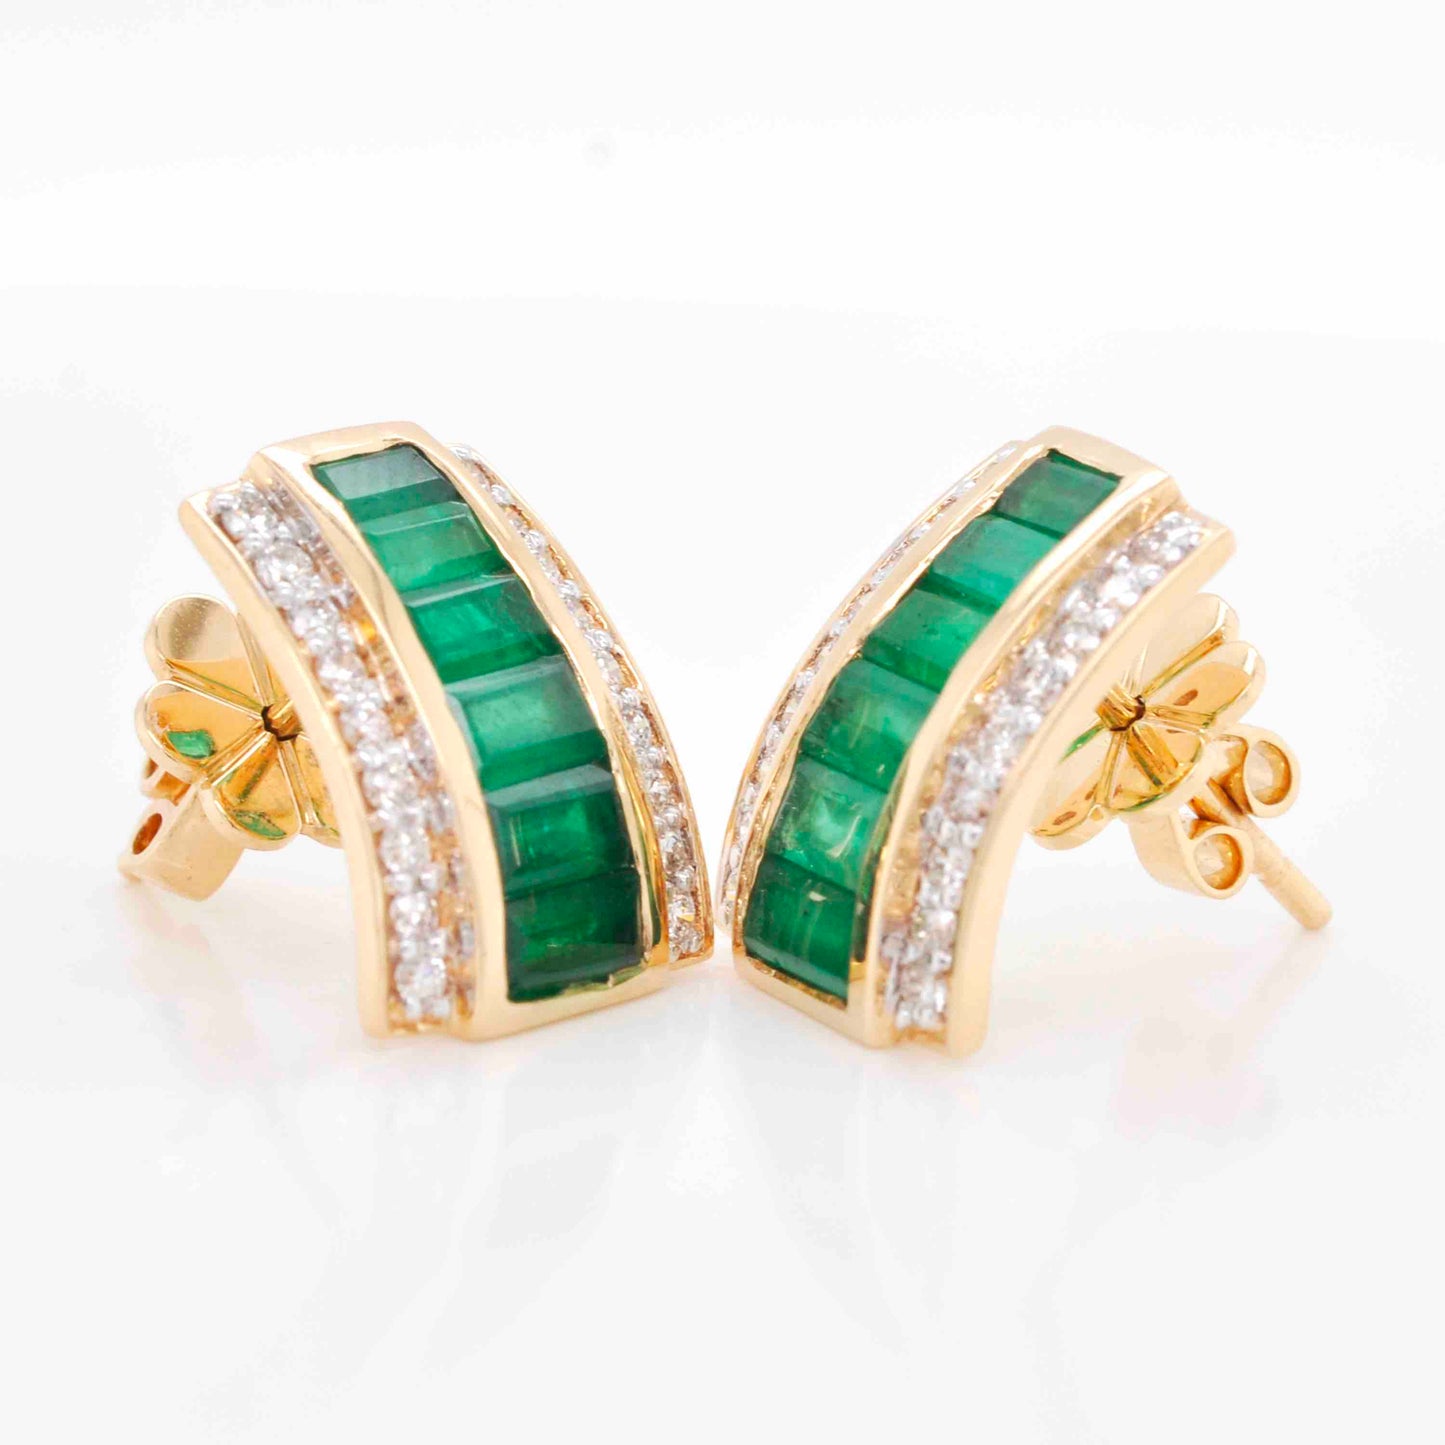 Zambian emerald cluster earrings design